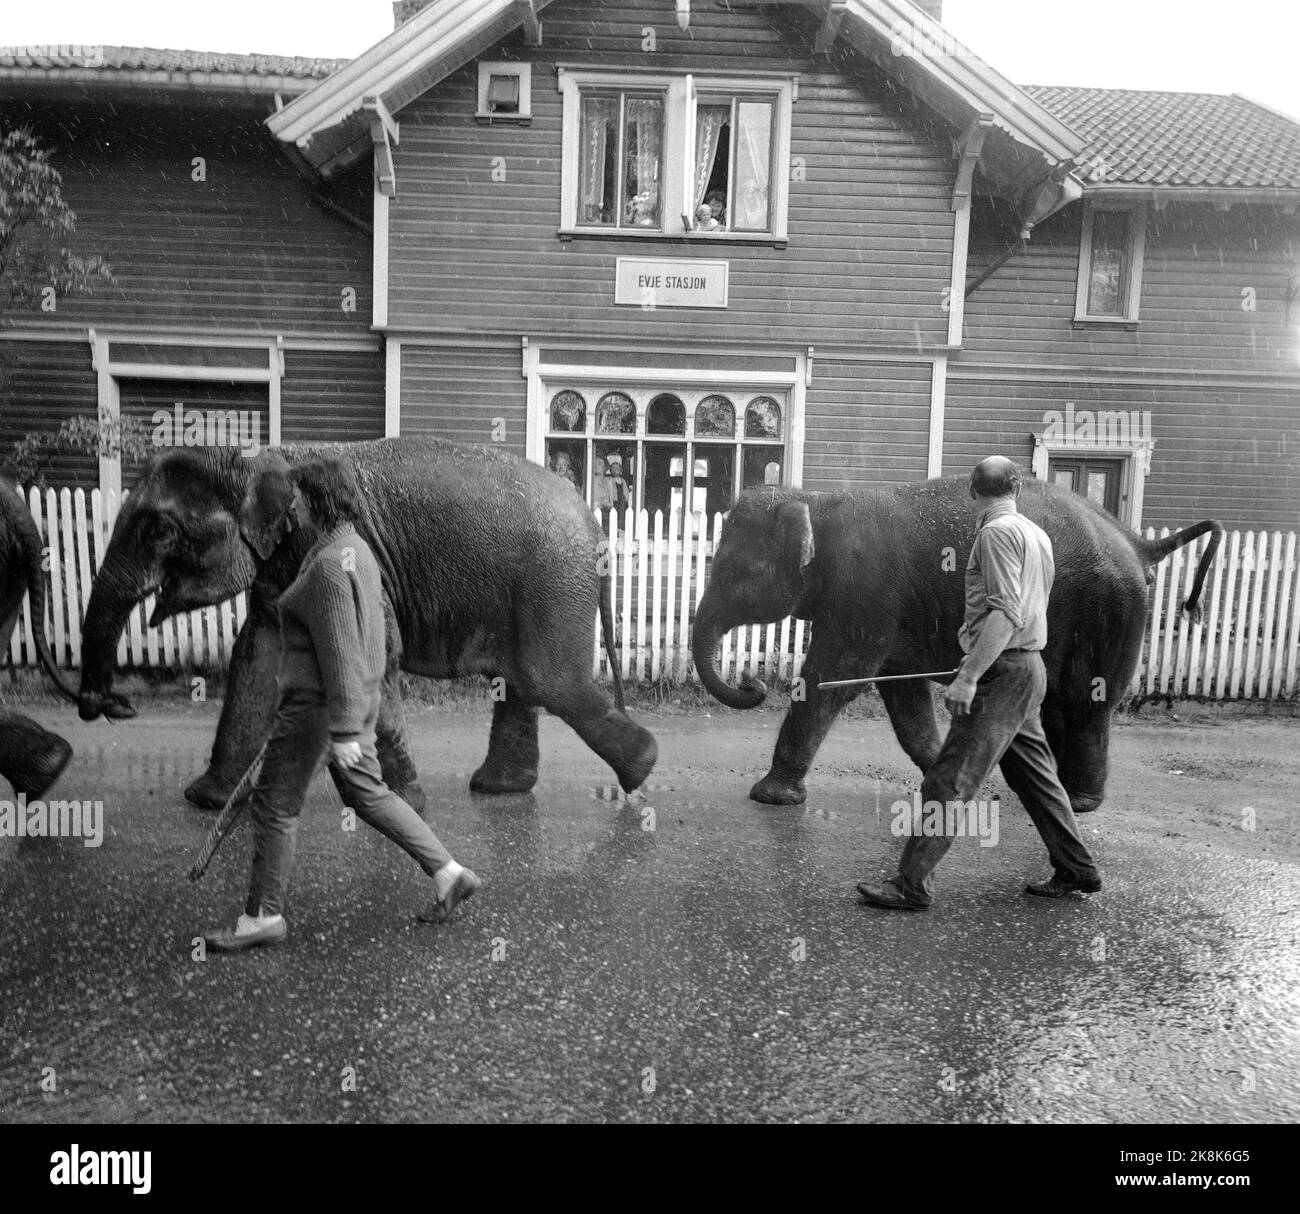 Sørlandet, sommeren 1962. Da elefantene kom til Evje: fire døgns slit for åtte minutters opptreden. Sirkus Arnardo er på turne på Sørlandet med fem to-tonns elefanter. Det byr på problemer. De sto i jernbanevogner i ett døgn på Marnardal stasjon fordi det ikke fantes biler som kunne ta dem videre. Dagen etter reiste de videre til Grovane stasjon hvor de skulle lastes om til den smalsporede Setesdalsbanen til Evje. Det var mislykket, og først etter fire døgn kom elefantene til Evje pr trailere, der forestillingen formelt var over, men der Arnardo underholdt med ekstranummer til elefantene arriv Stock Photo